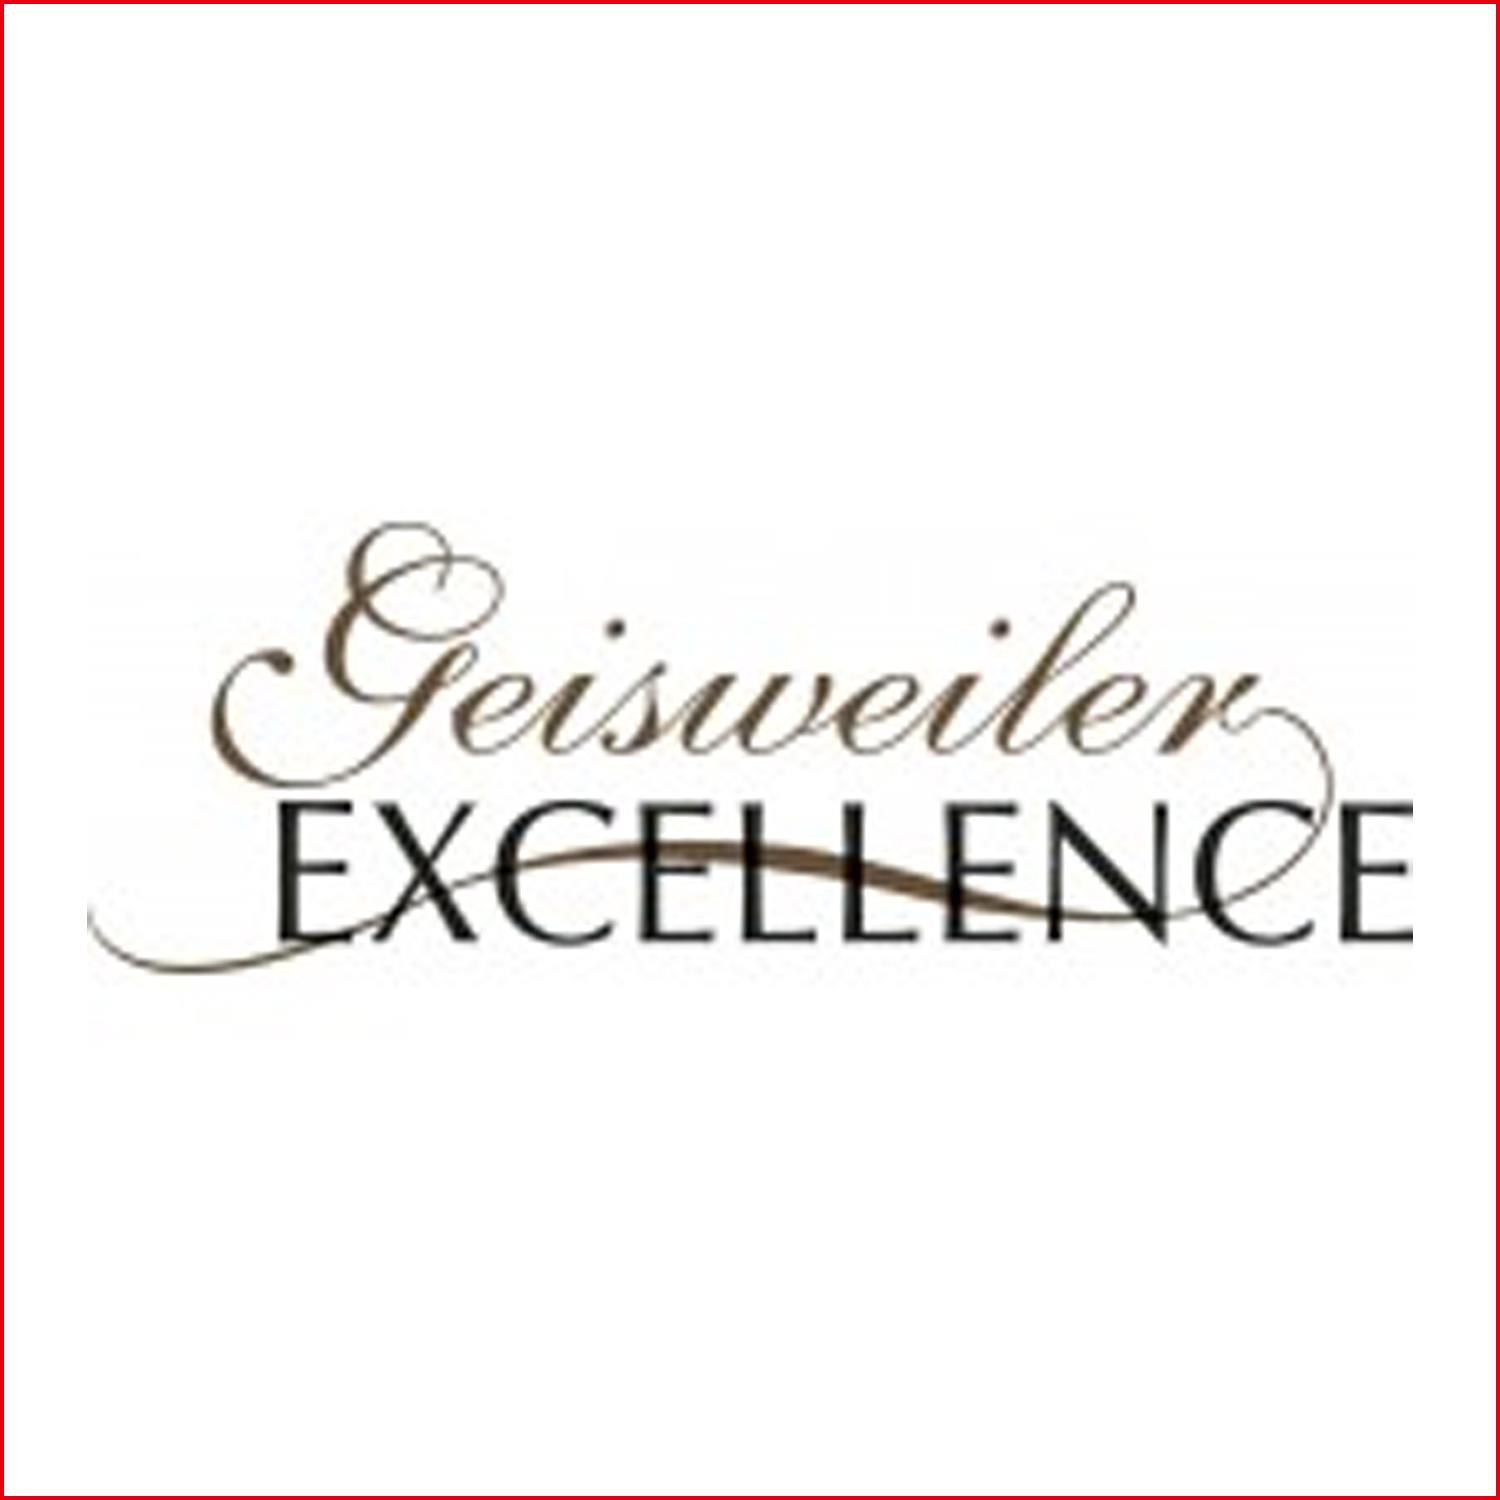 Geisweiler Gesweiler Excellence